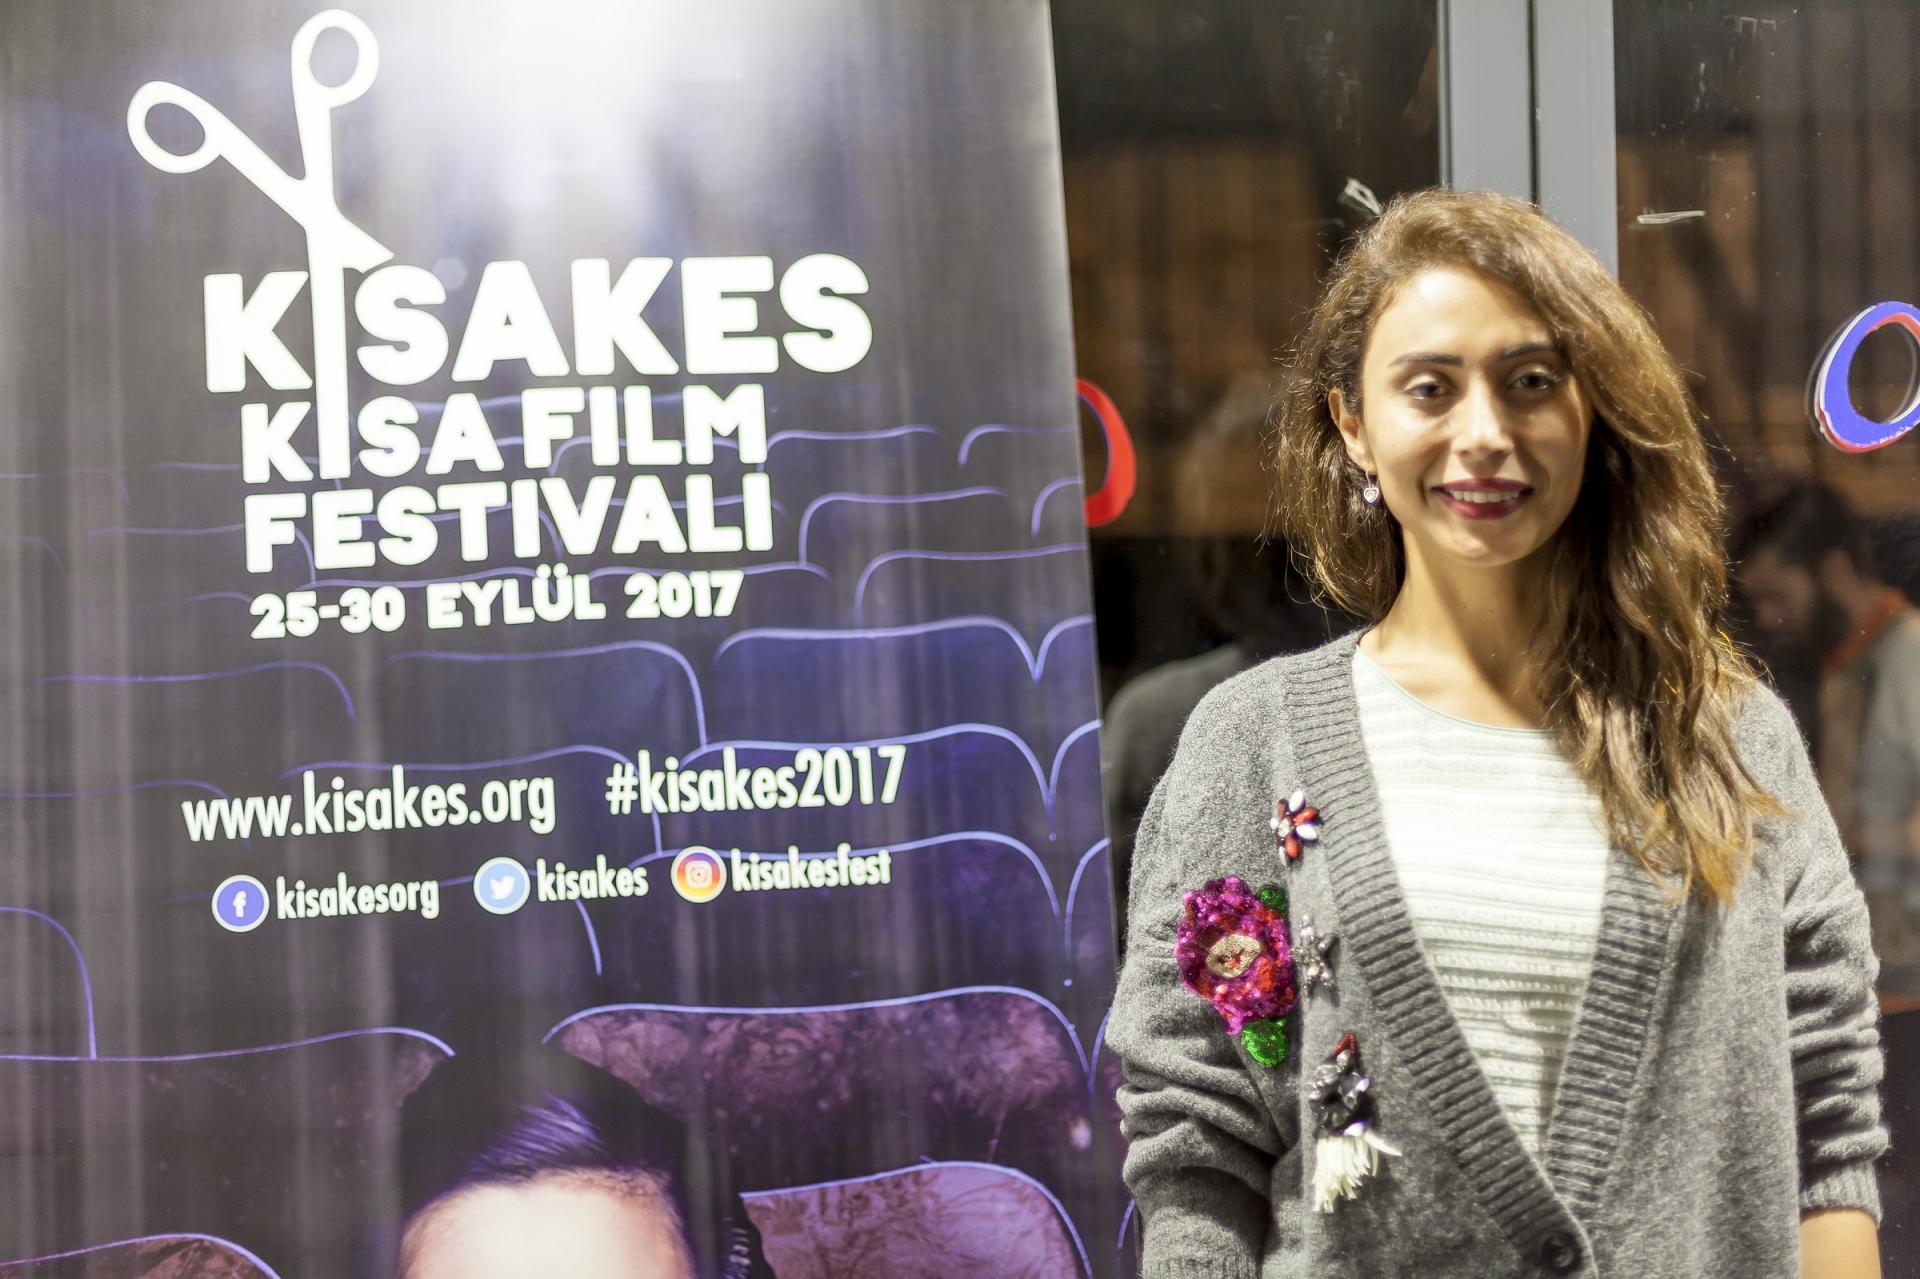 Suriyelilerin dramını anlatan film ödül aldı